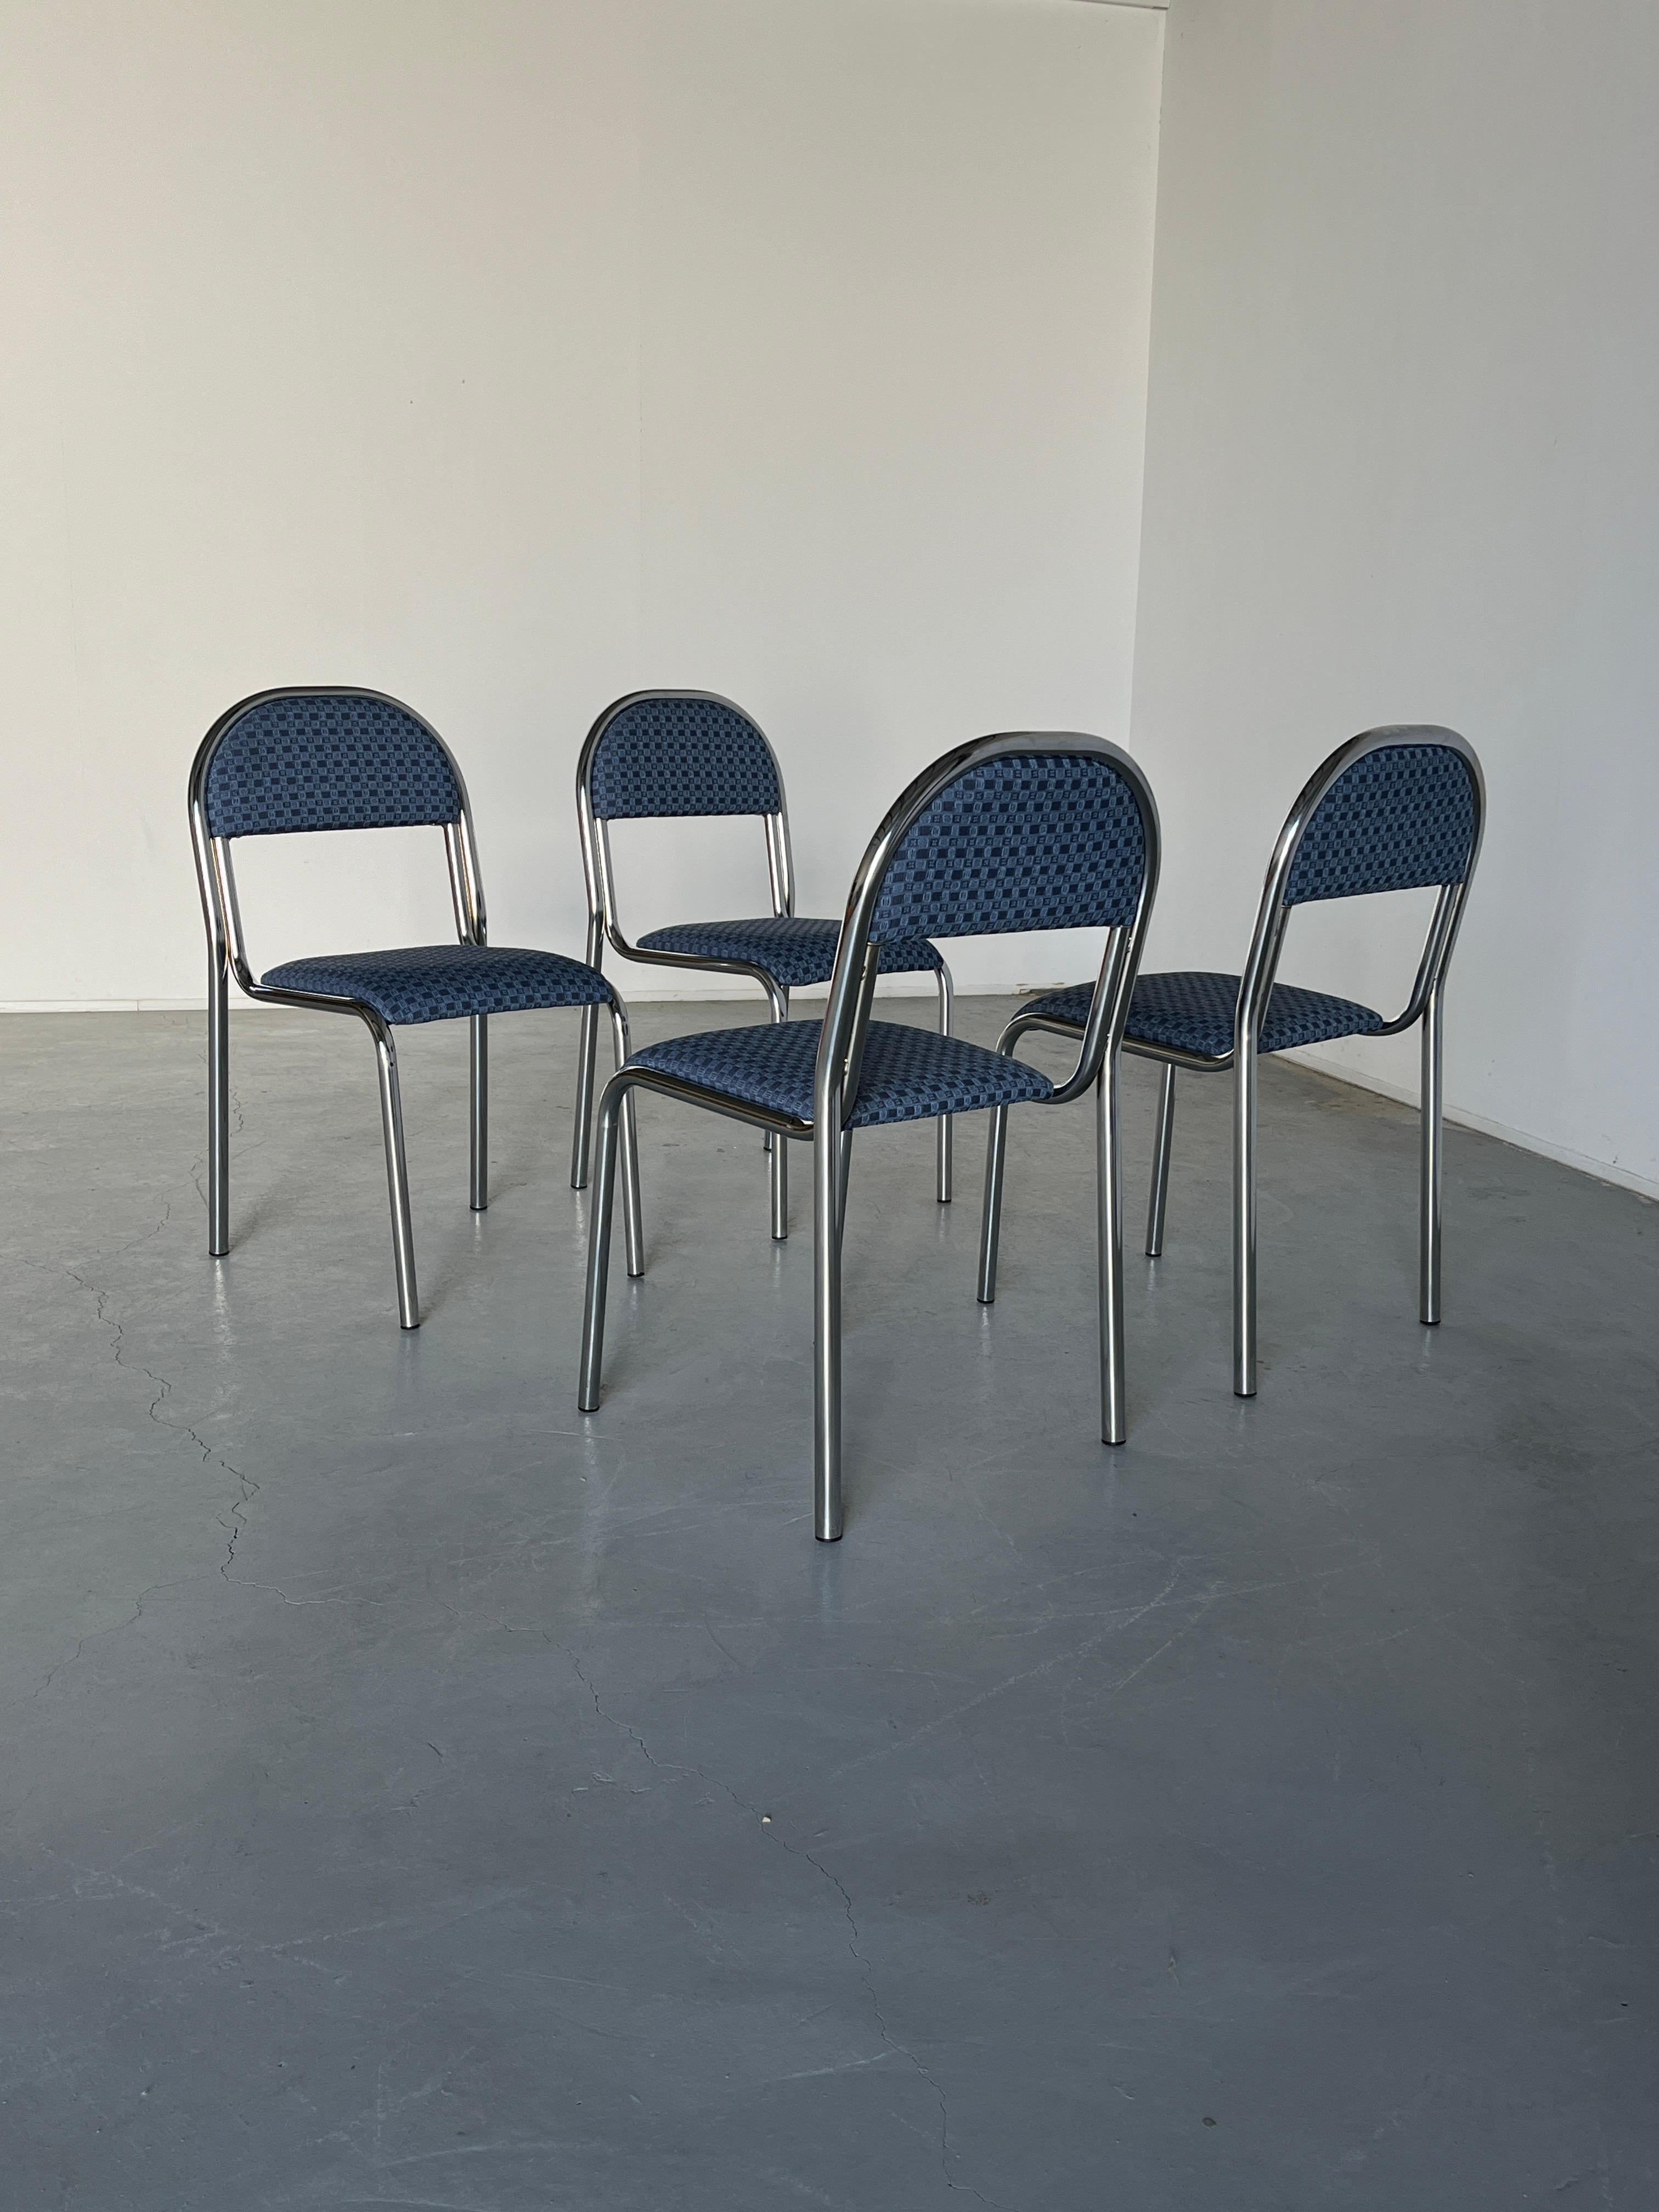 Satz von 4 stapelbaren Esszimmerstühlen aus Chromstahl im Bauhaus-Stil, 80er Jahre, Italien (Ende des 20. Jahrhunderts)